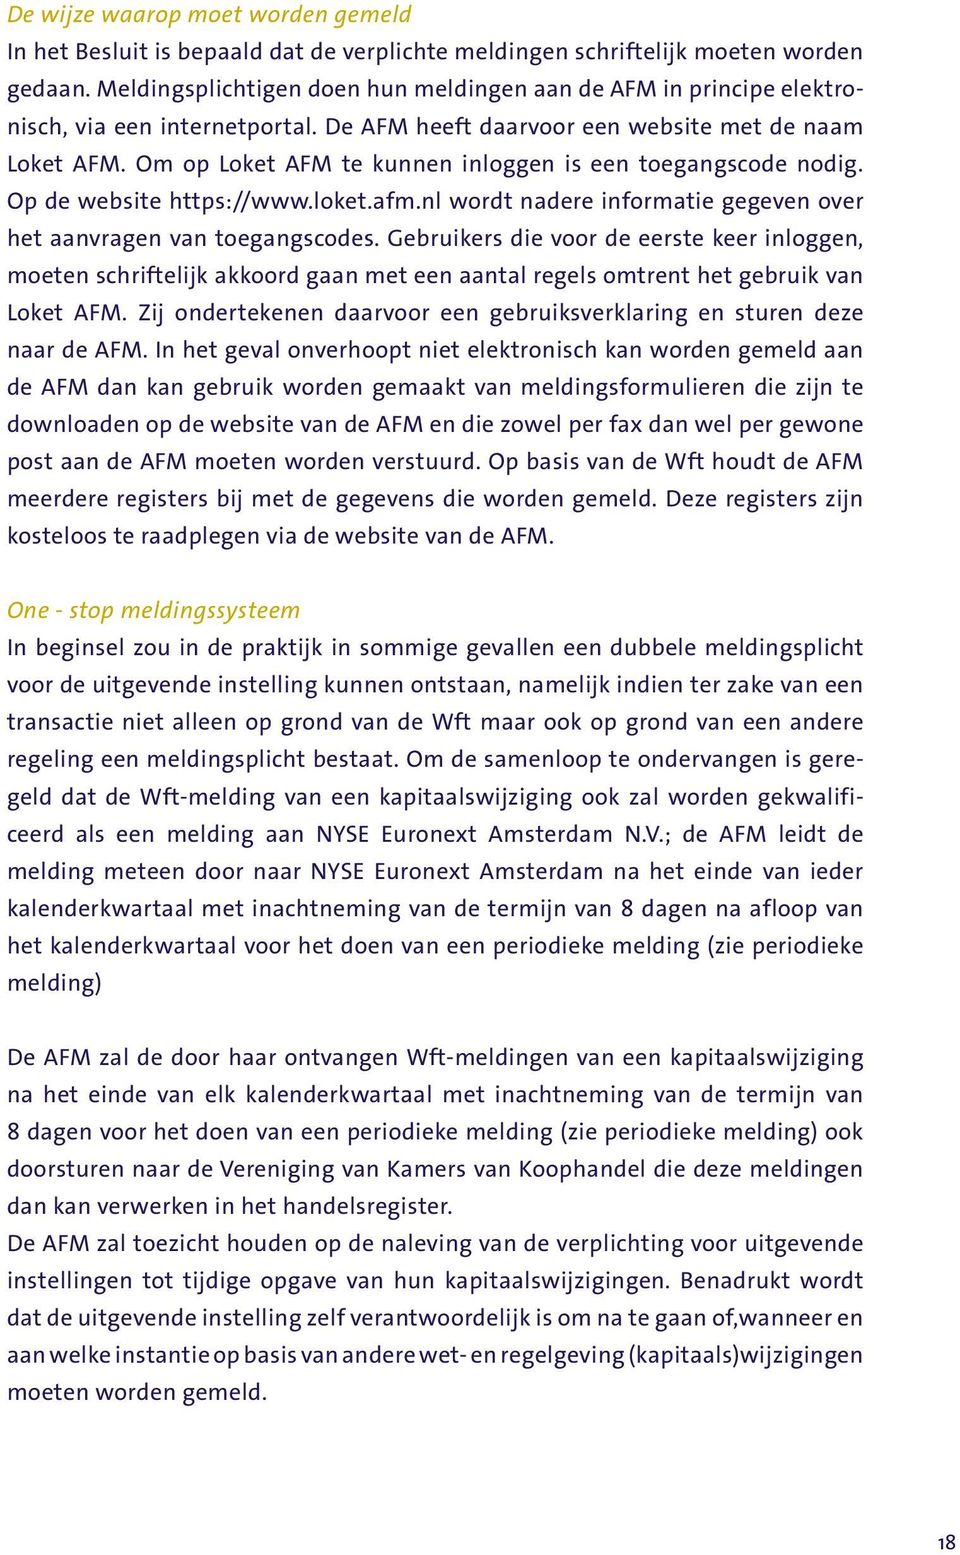 Om op Loket AFM te kunnen inloggen is een toegangscode nodig. Op de website https://www.loket.afm.nl wordt nadere informatie gegeven over het aanvragen van toegangscodes.